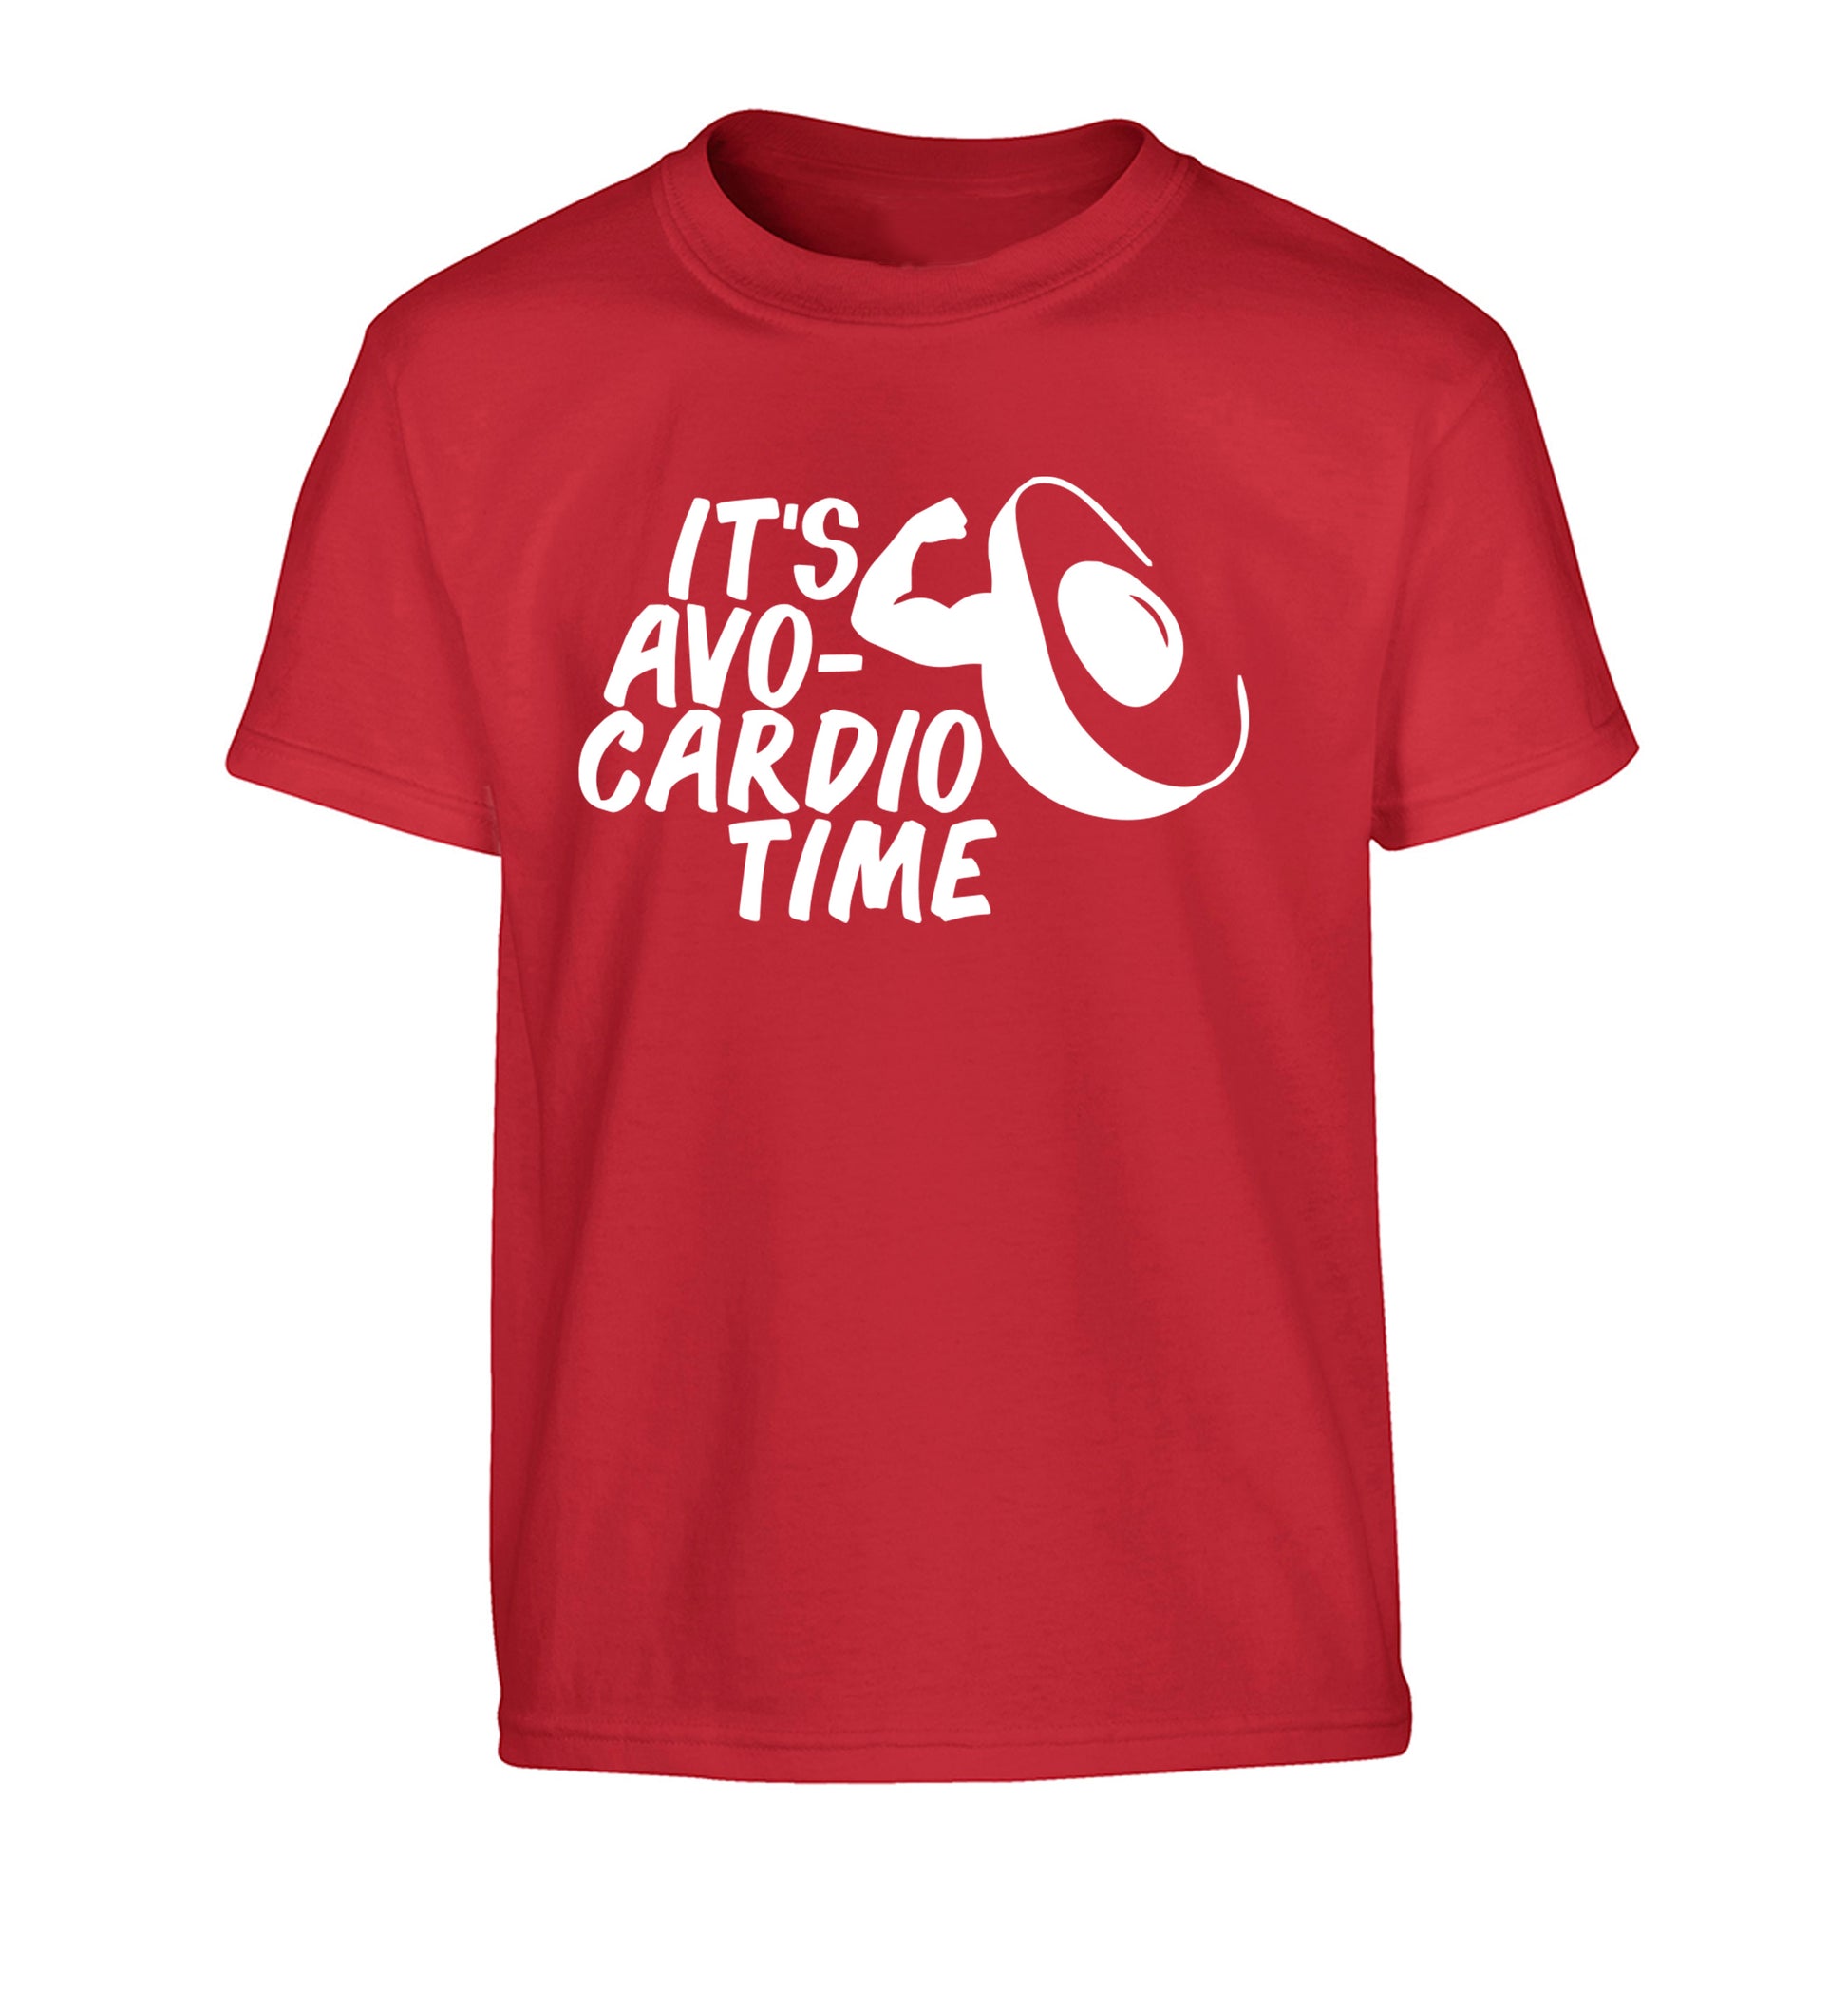 It's avo-cardio time Children's red Tshirt 12-14 Years